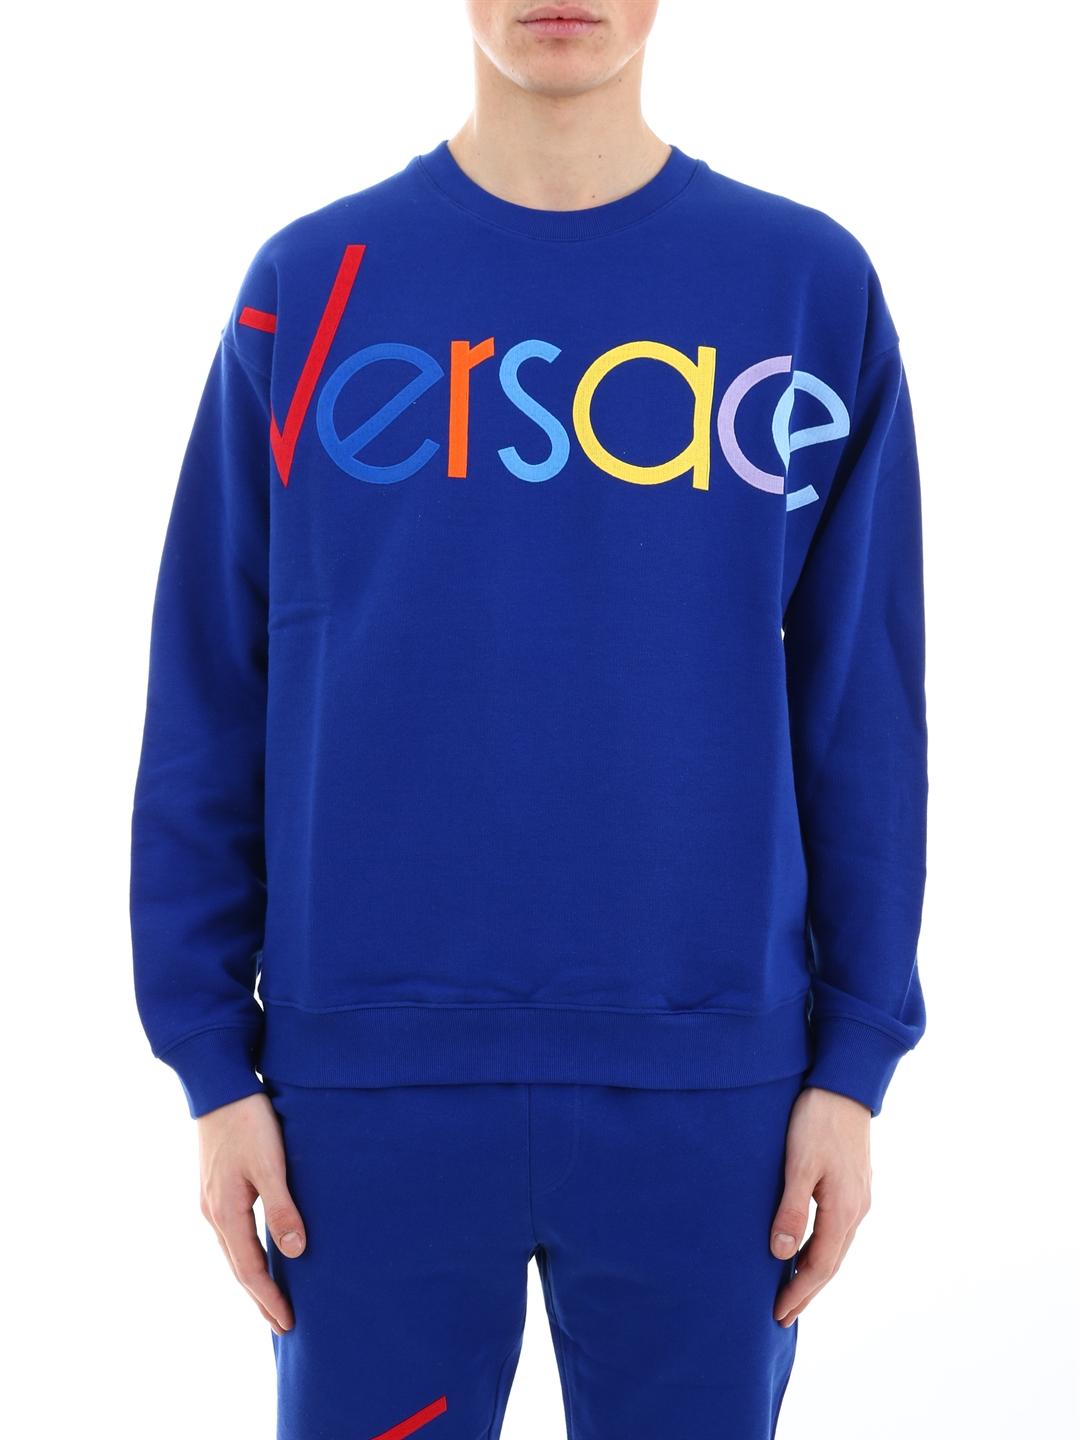 versace blue sweatshirt